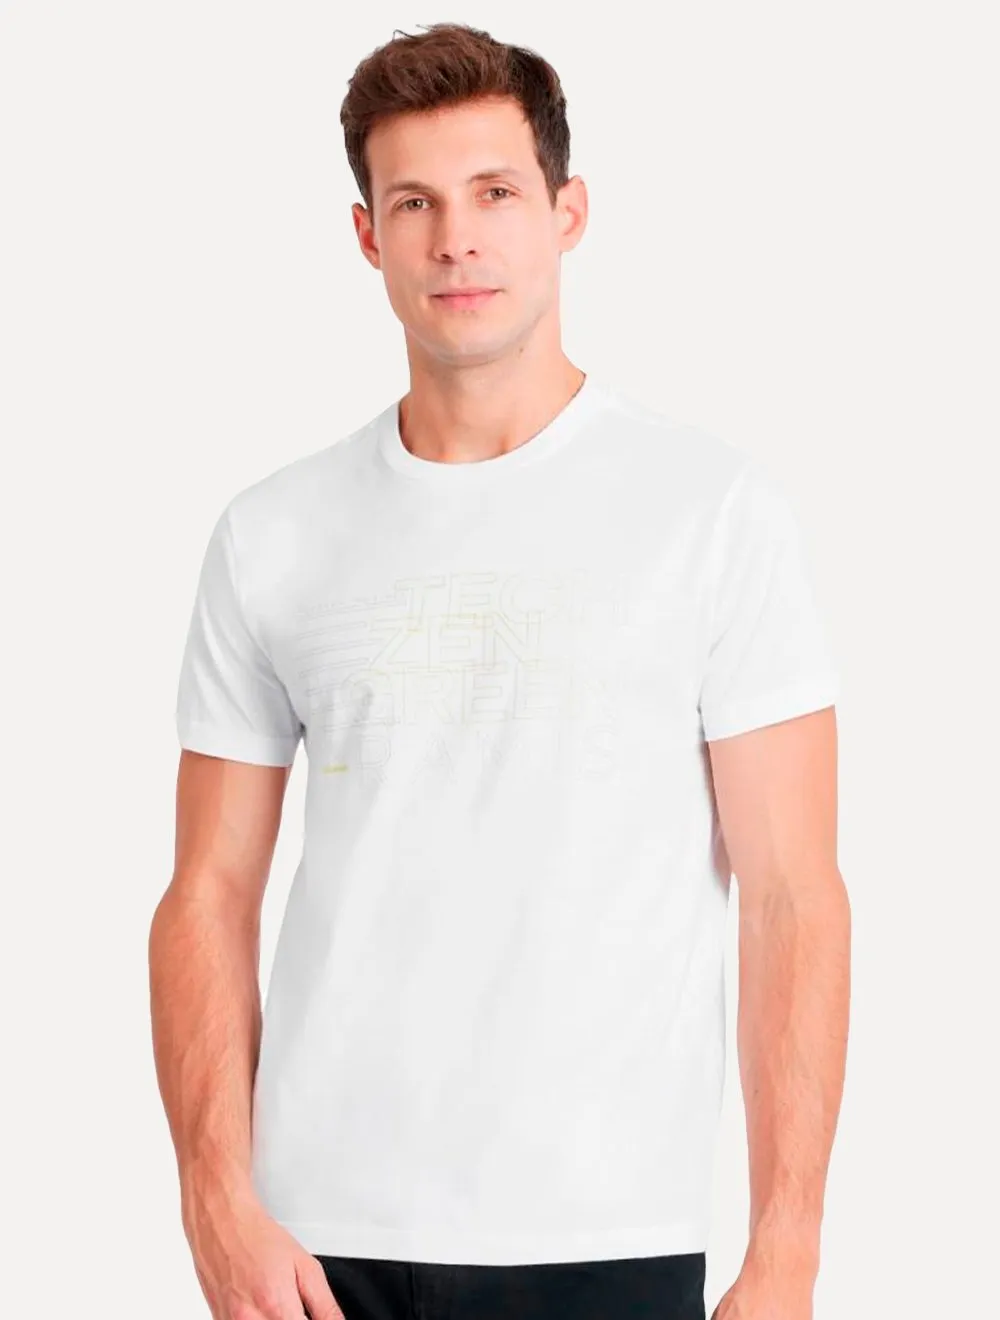 Camiseta Aramis Masculina Estampa Pilares Branca